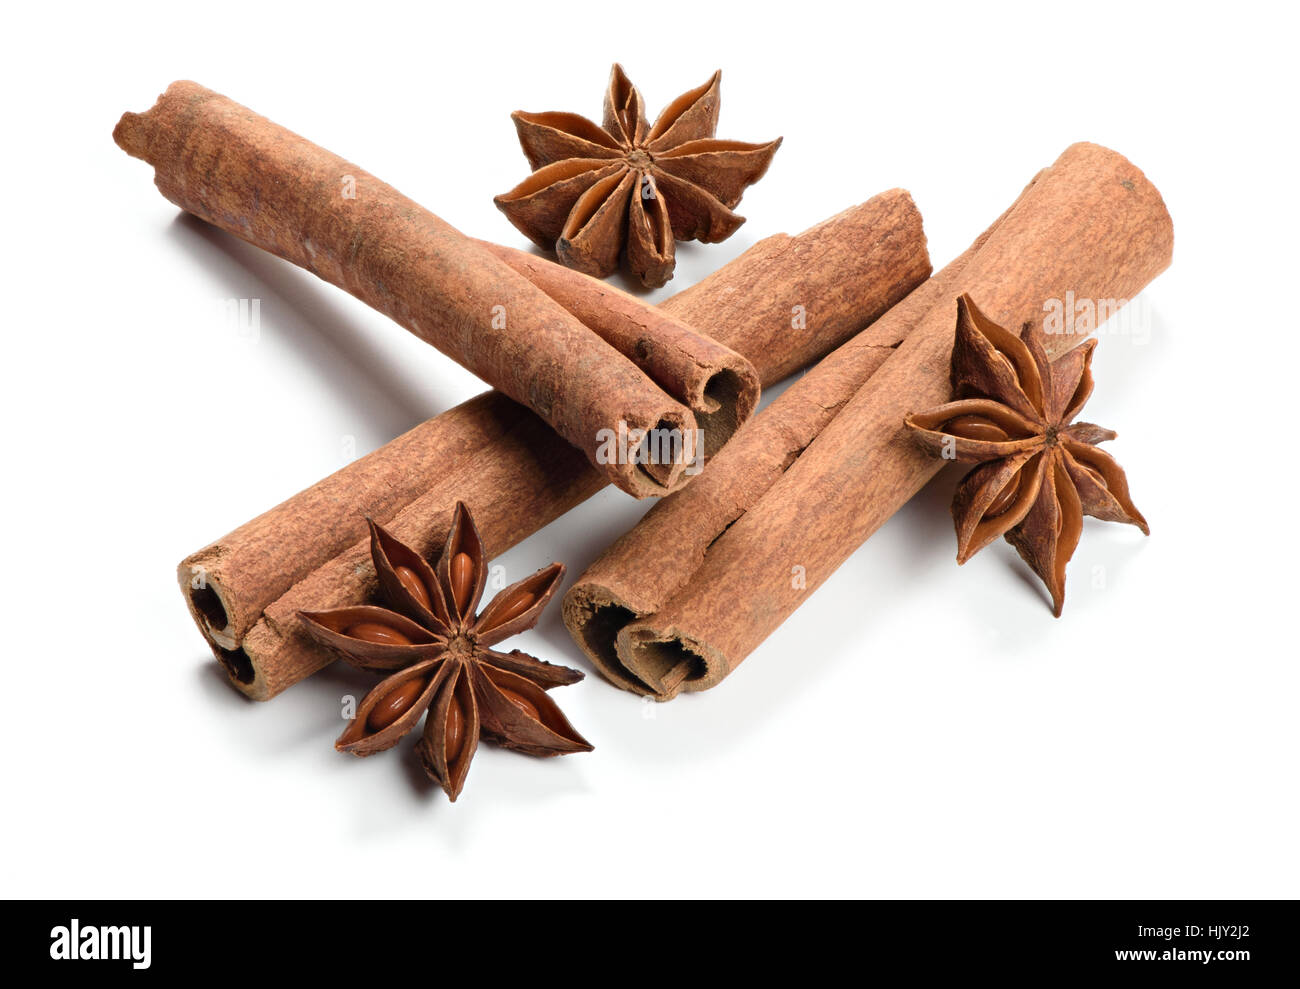 La cannella. Cassia, noto anche come Cinnamomum cinese e anice. Isolato su sfondo bianco Foto Stock